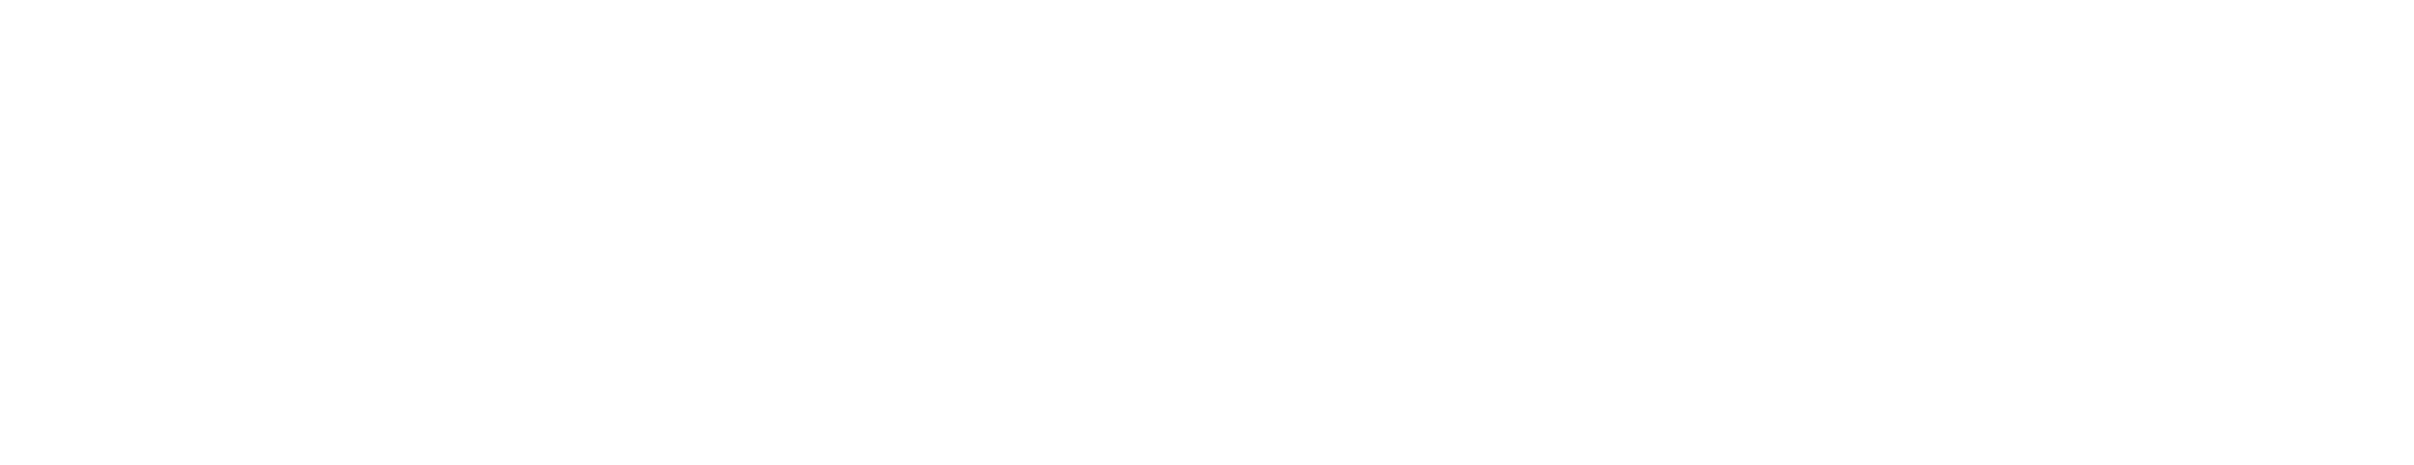 Idaho Farm Bureau Insurance Company logo